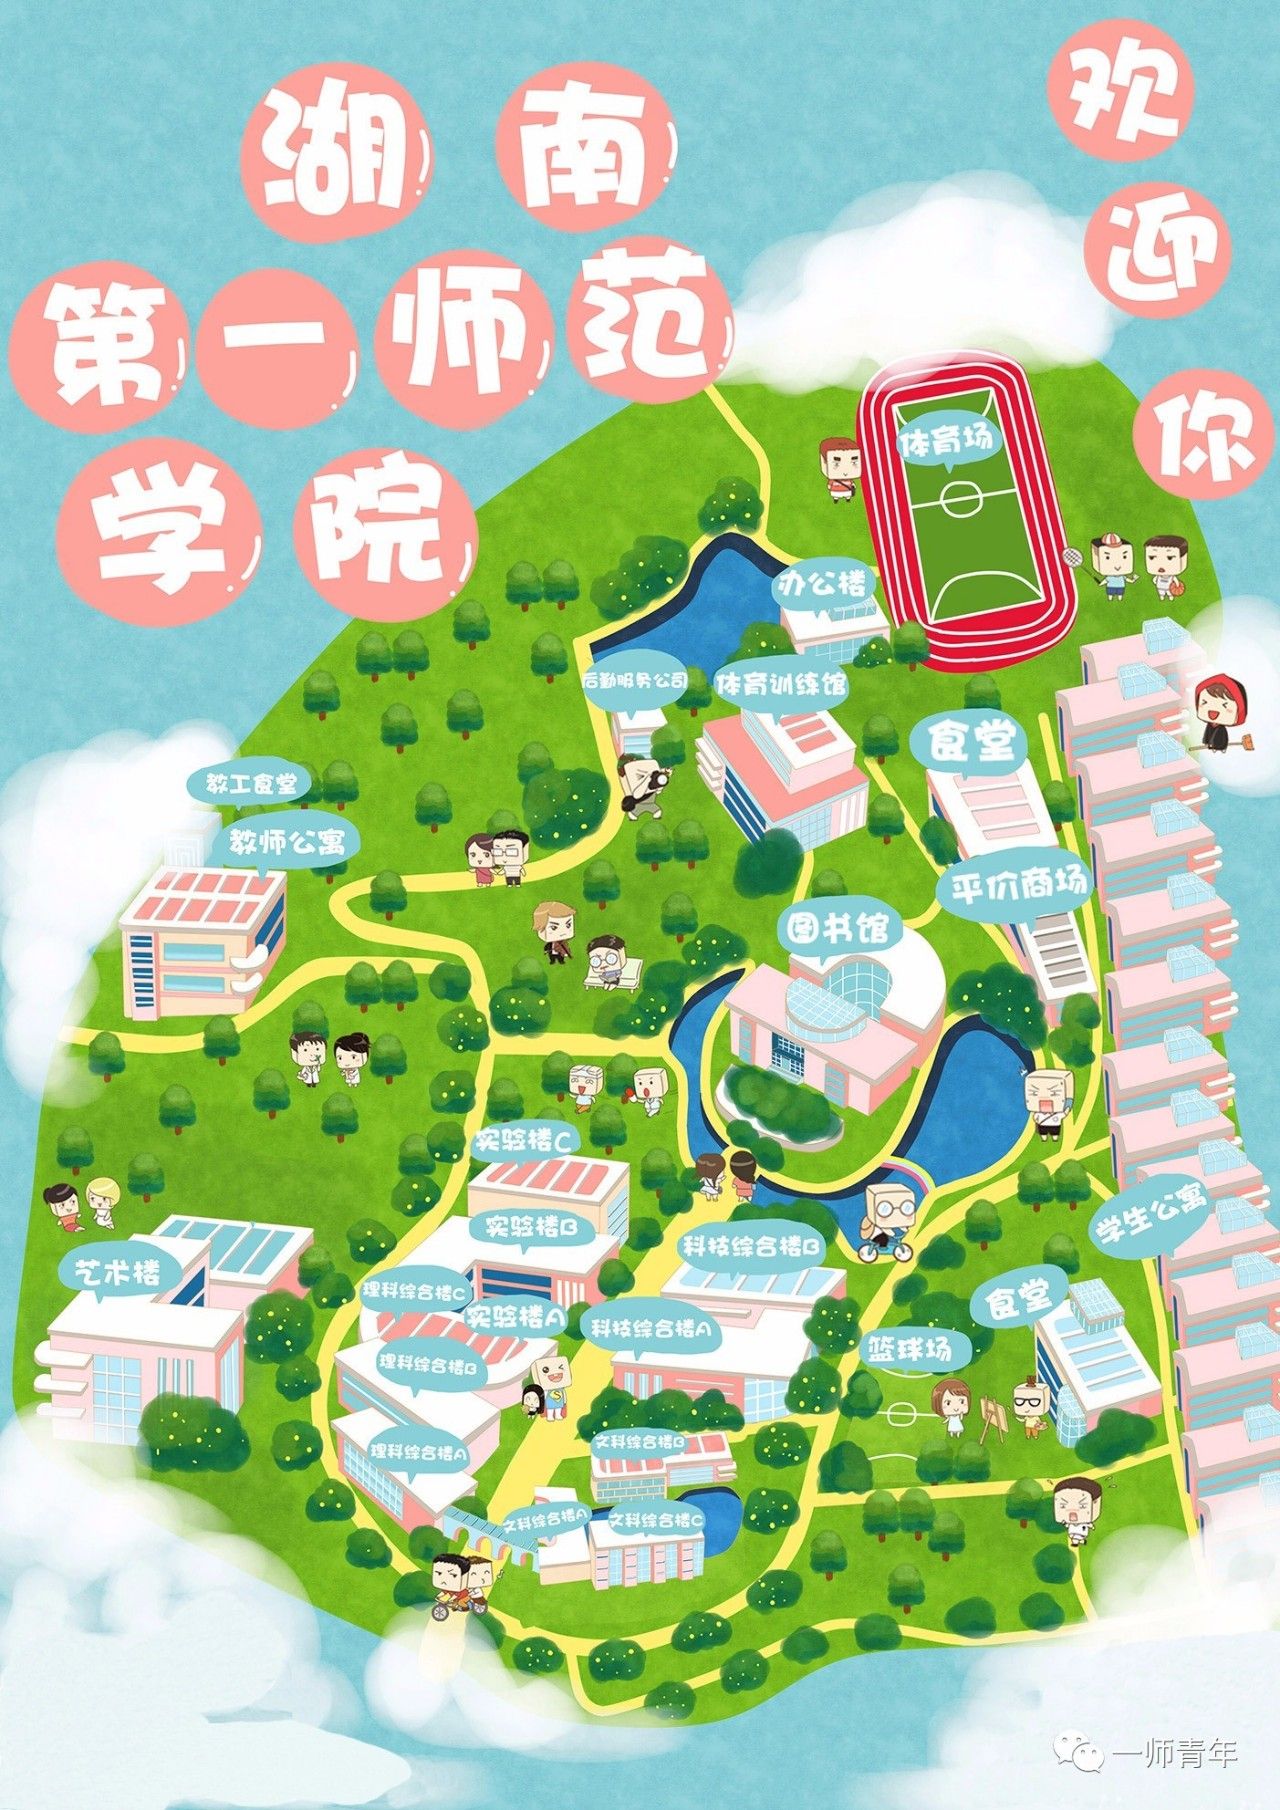 湖南师范大学本部地图图片